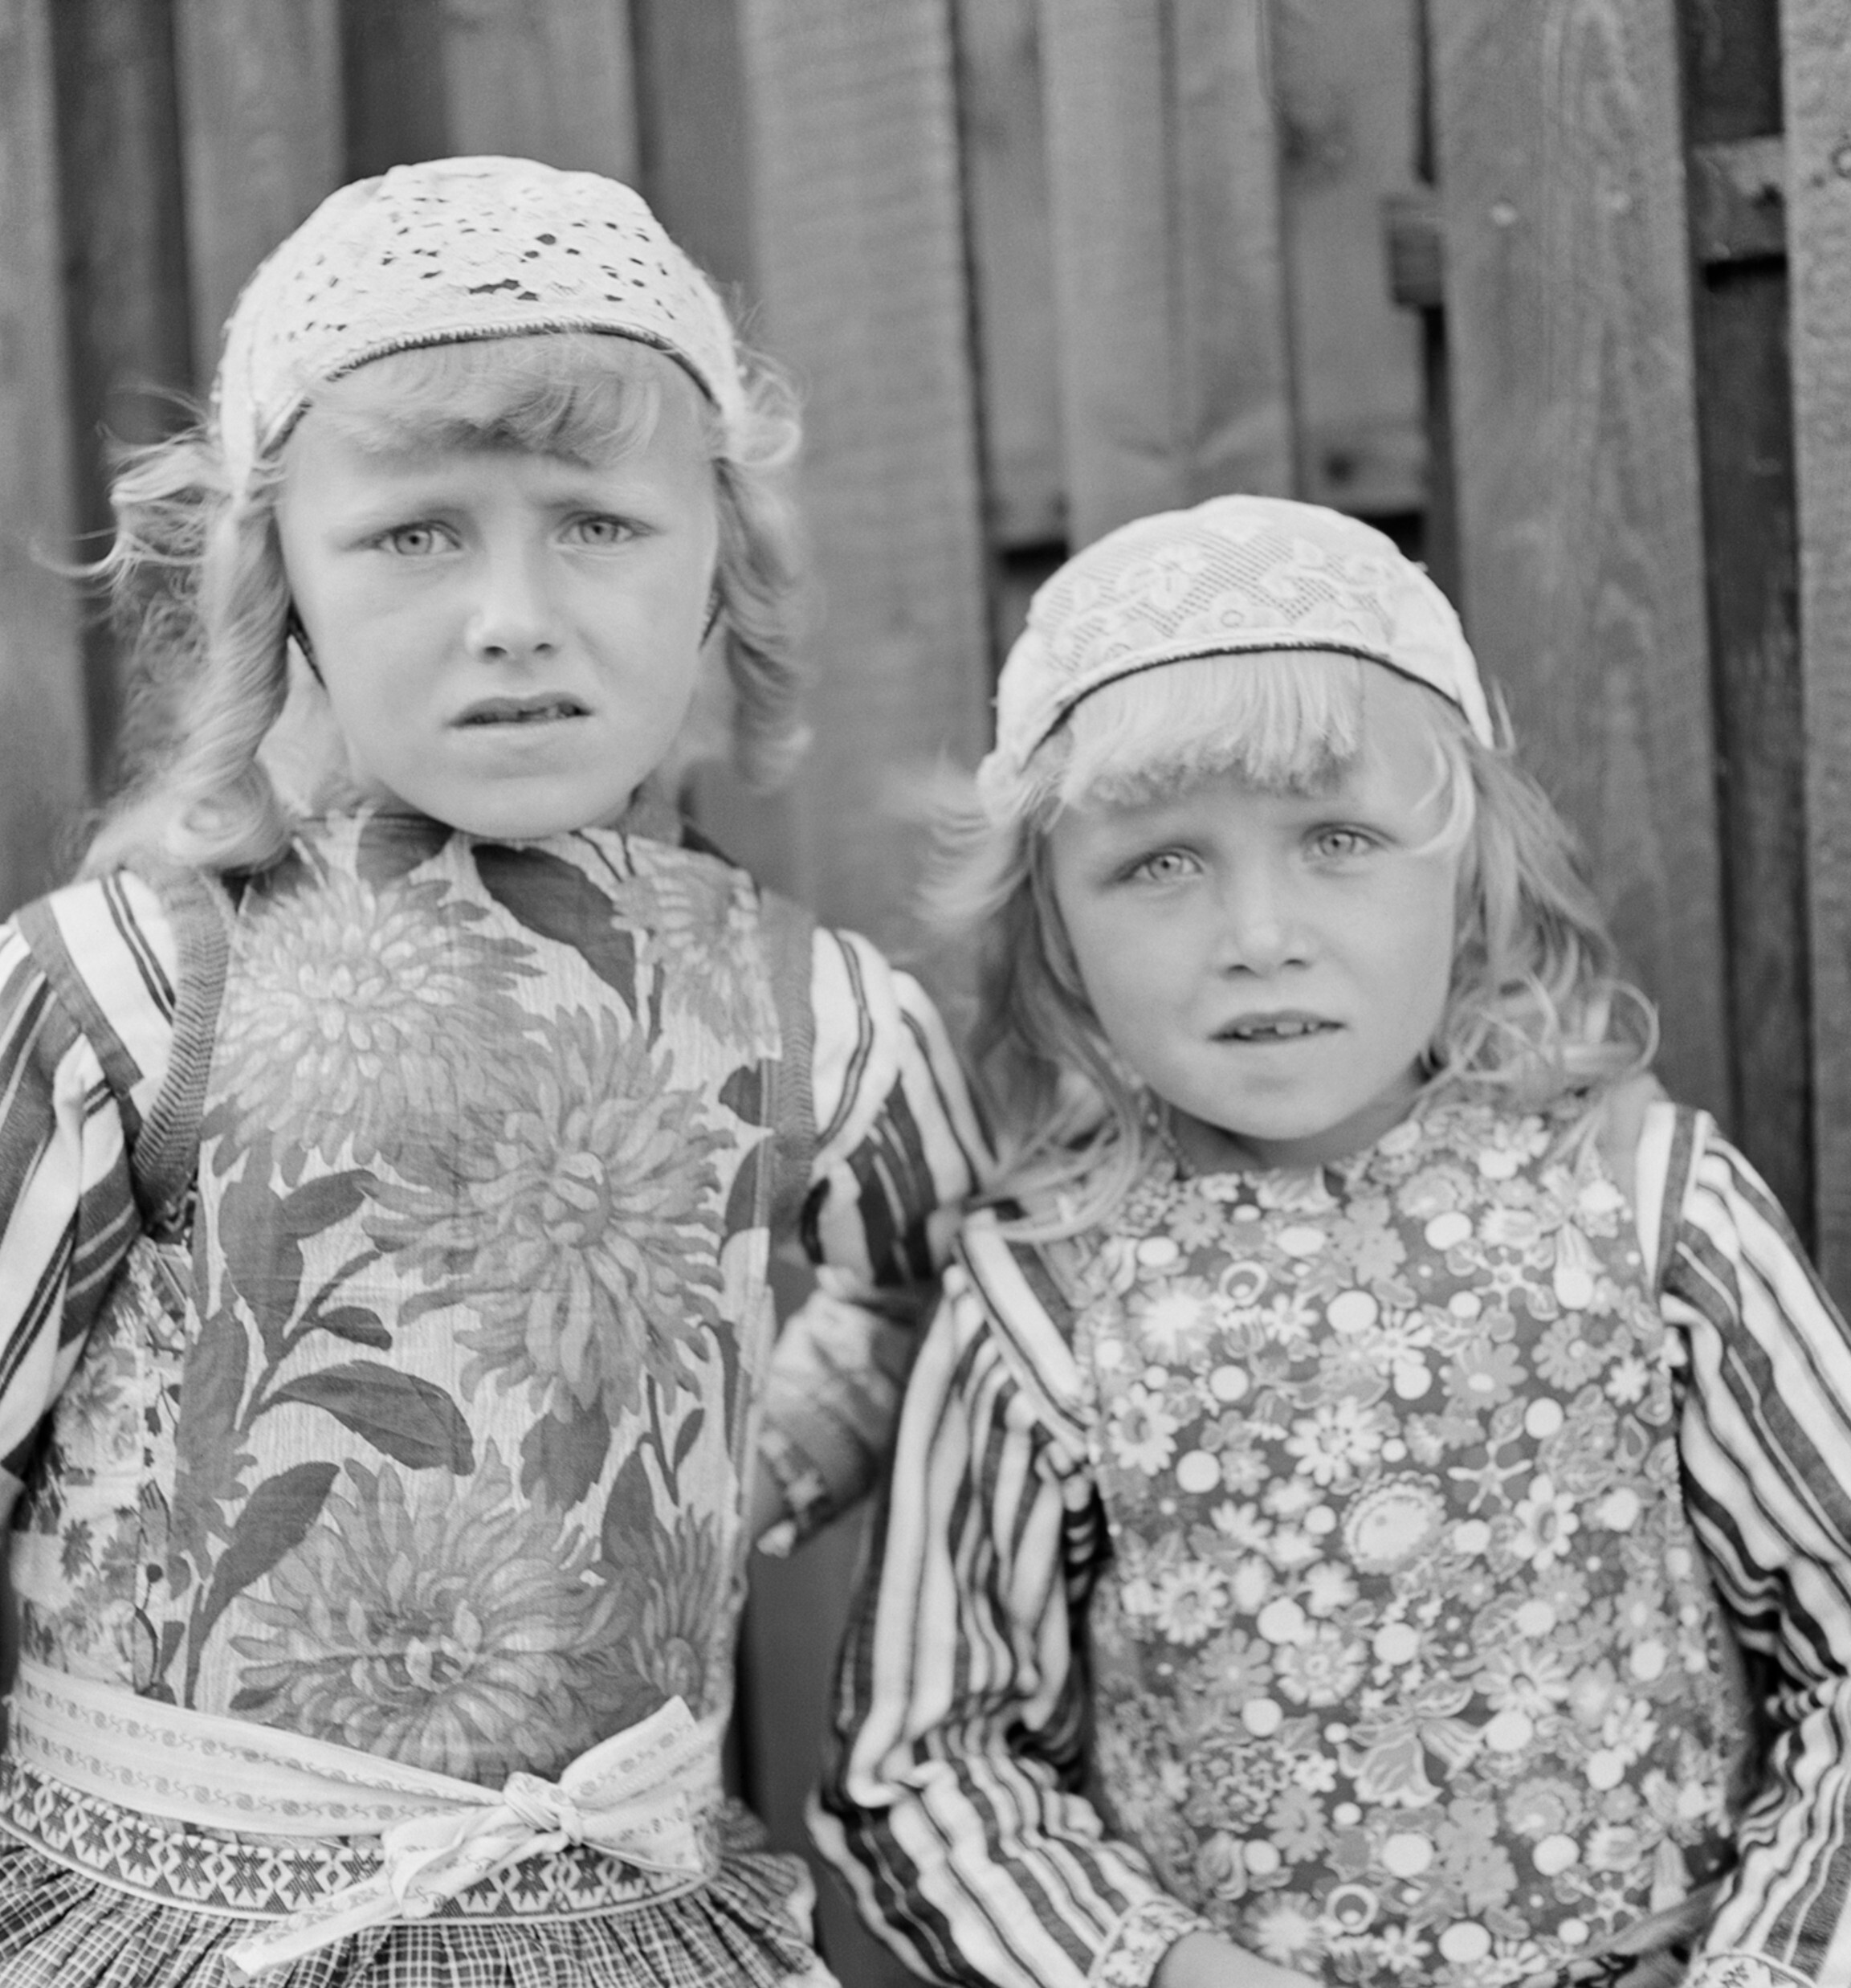 Яннетье Янсен и Нилтье Шиппер в klederdracht (традиционные костюмы), Маркен, Нидерланды, ок. 1938 год. Фотограф Роман Вишняк